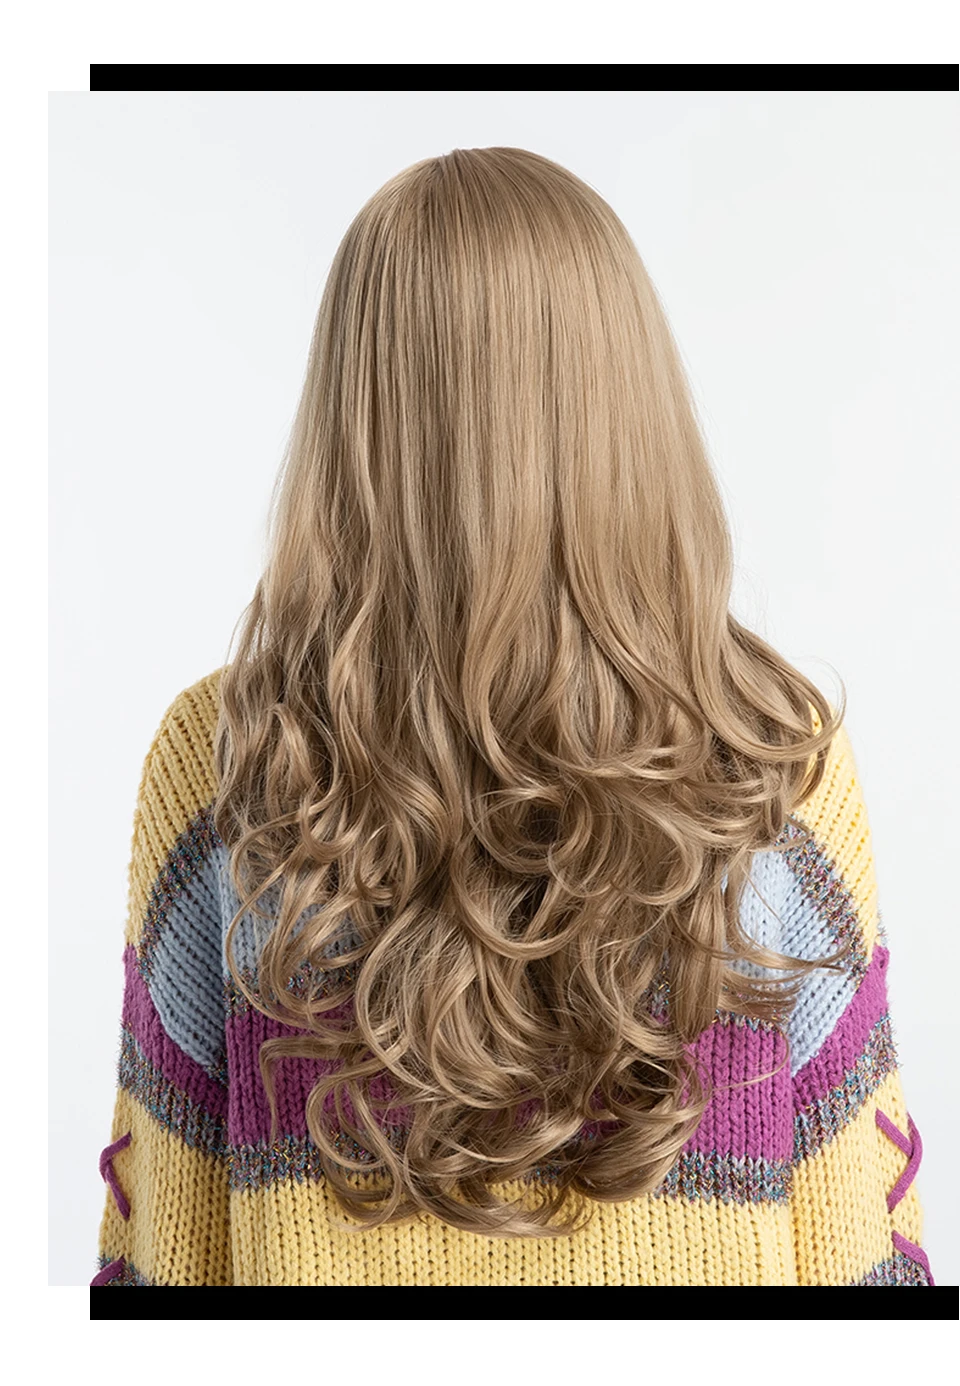 Inhair Cube 26 дюймов Для женщин парики длинные естественная волна Синтетический слоистых Стиль волос светло-коричневый с полной парики